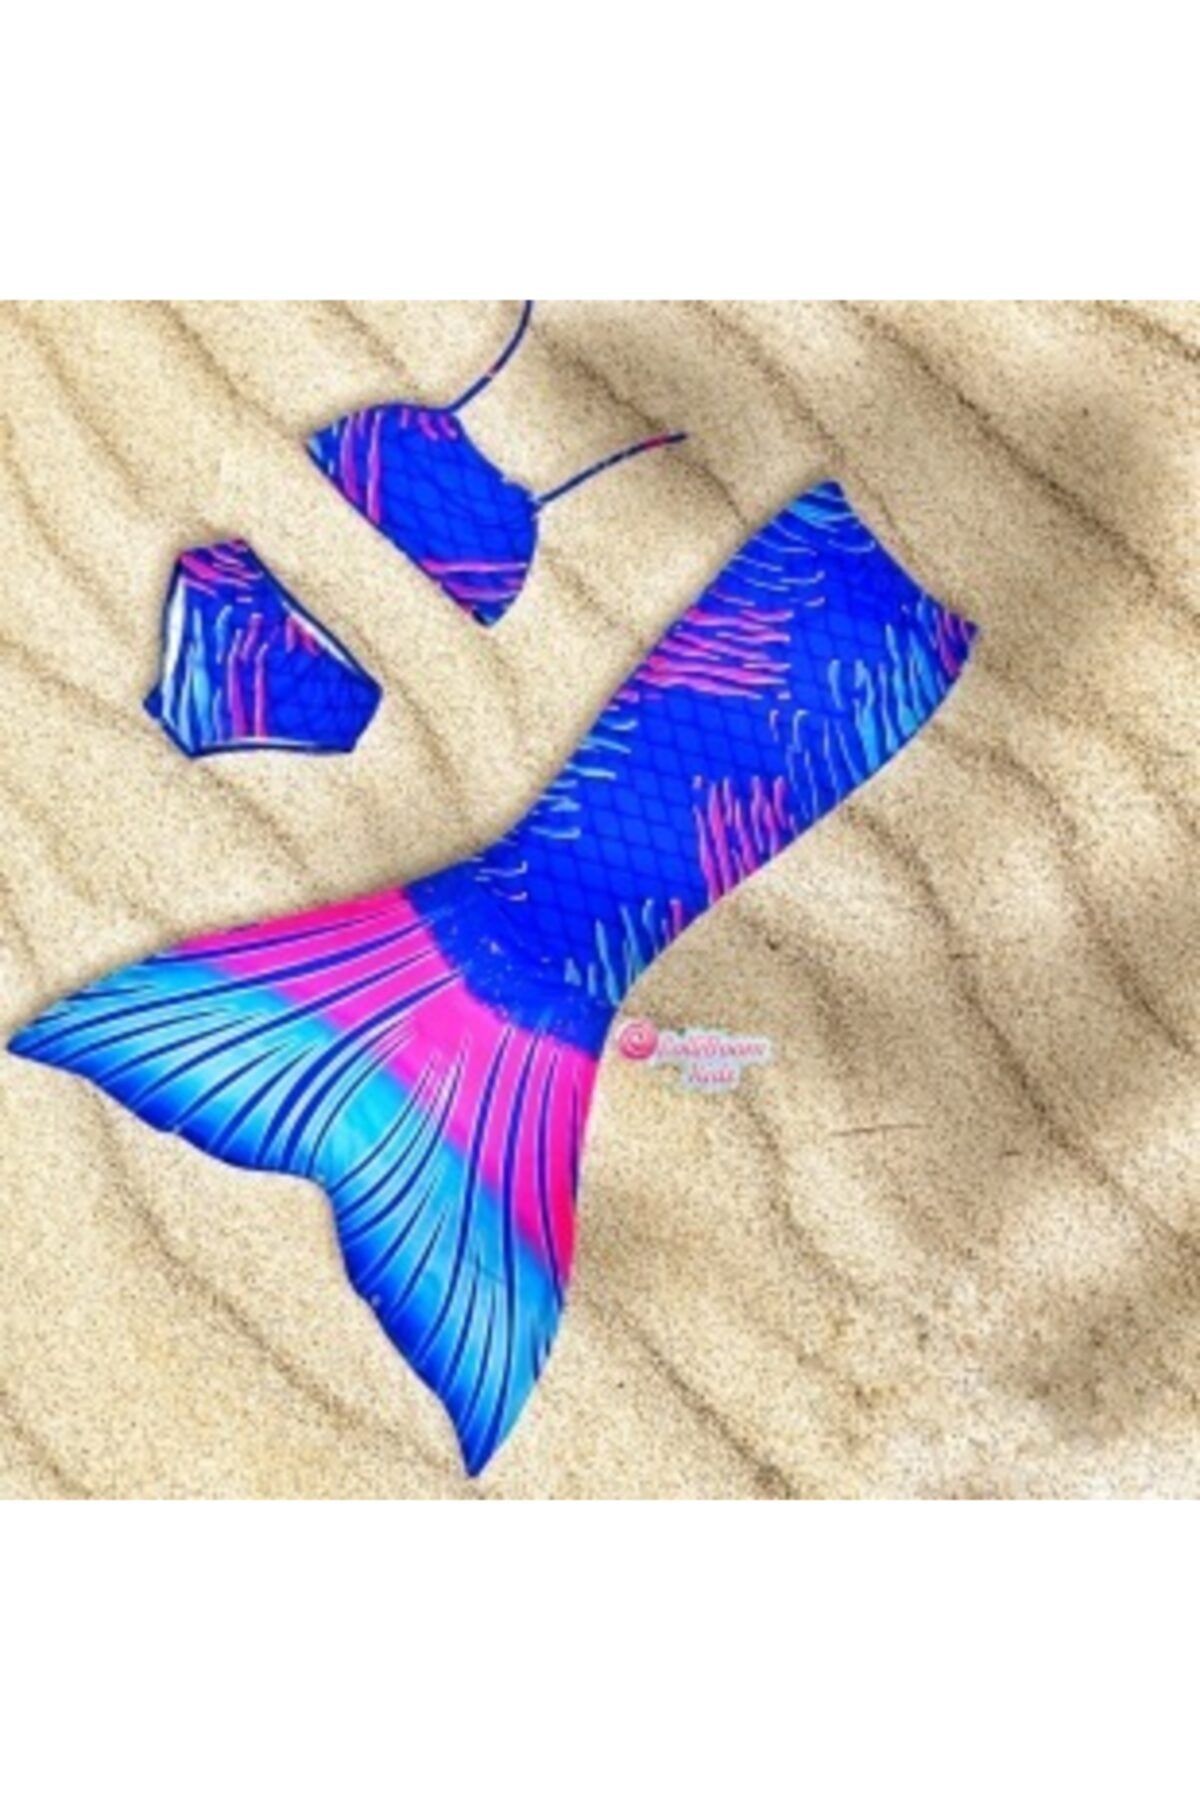 Lolliboomkids Kız Çocuk Deniz Kızı Kostüm Bikini - Mayo Efsane Little Mermaid Fuşya Mavi Renk Geçişli Balıksırtı